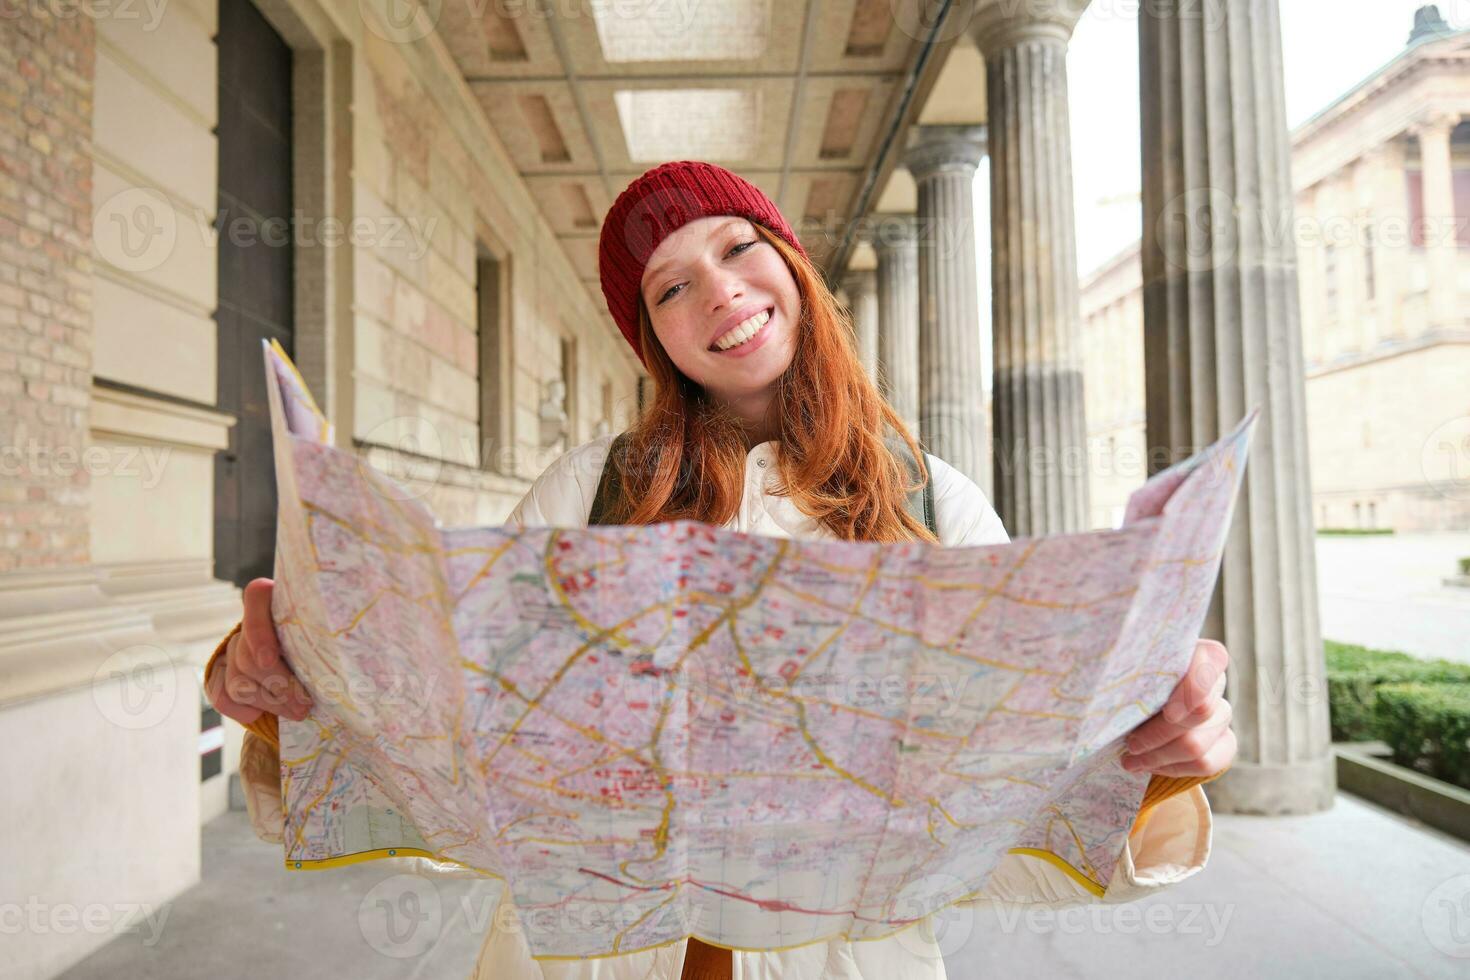 aventureux roux fille des promenades dans ville avec papier carte, explore ville comme touristique, regards pour populaire tourisme attractions, regards autour excité et sourit photo